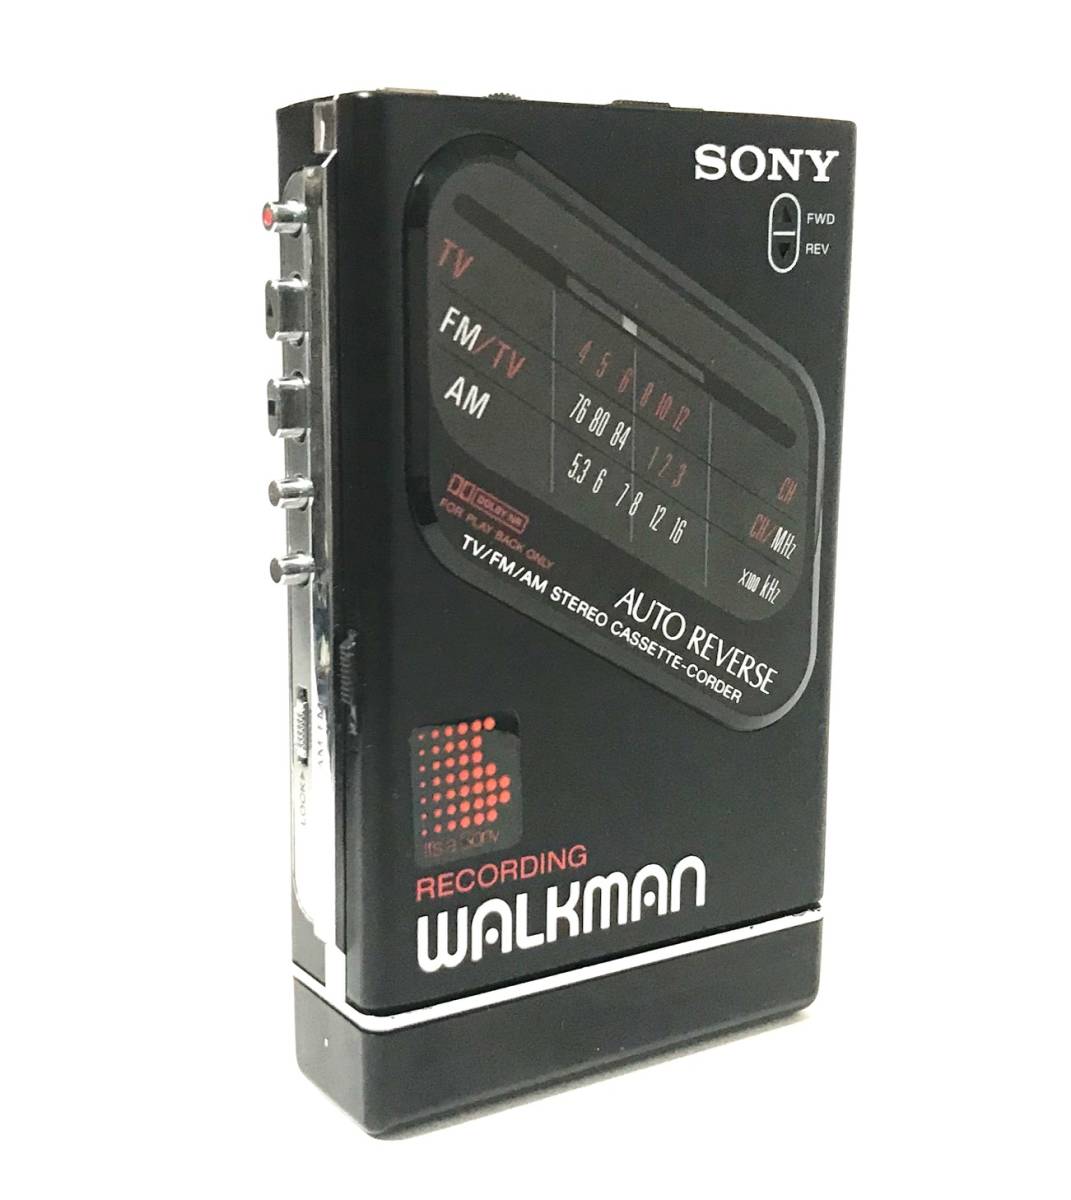 [美品][美音][整備品] SONY ウォークマン WM-F203 電池ボックス マットブラック (カセットテープ 再生/録音、ラジオ AM/FM)_画像1